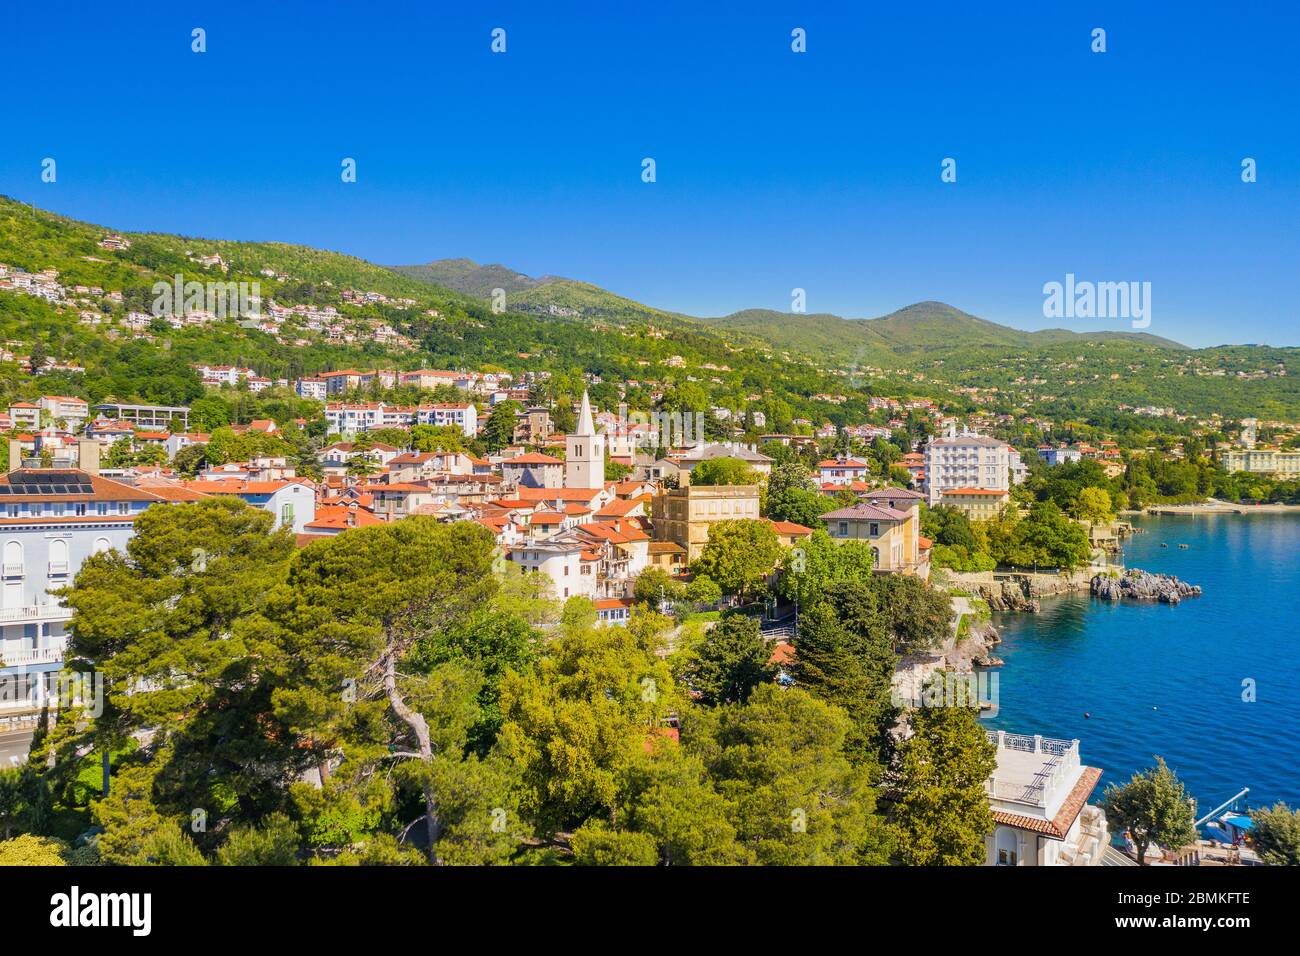 Croatie, belle ville de Lovran et la promenade maritime de Lungomare, vue panoramique aérienne sur la côte de la baie de Kvarner Banque D'Images